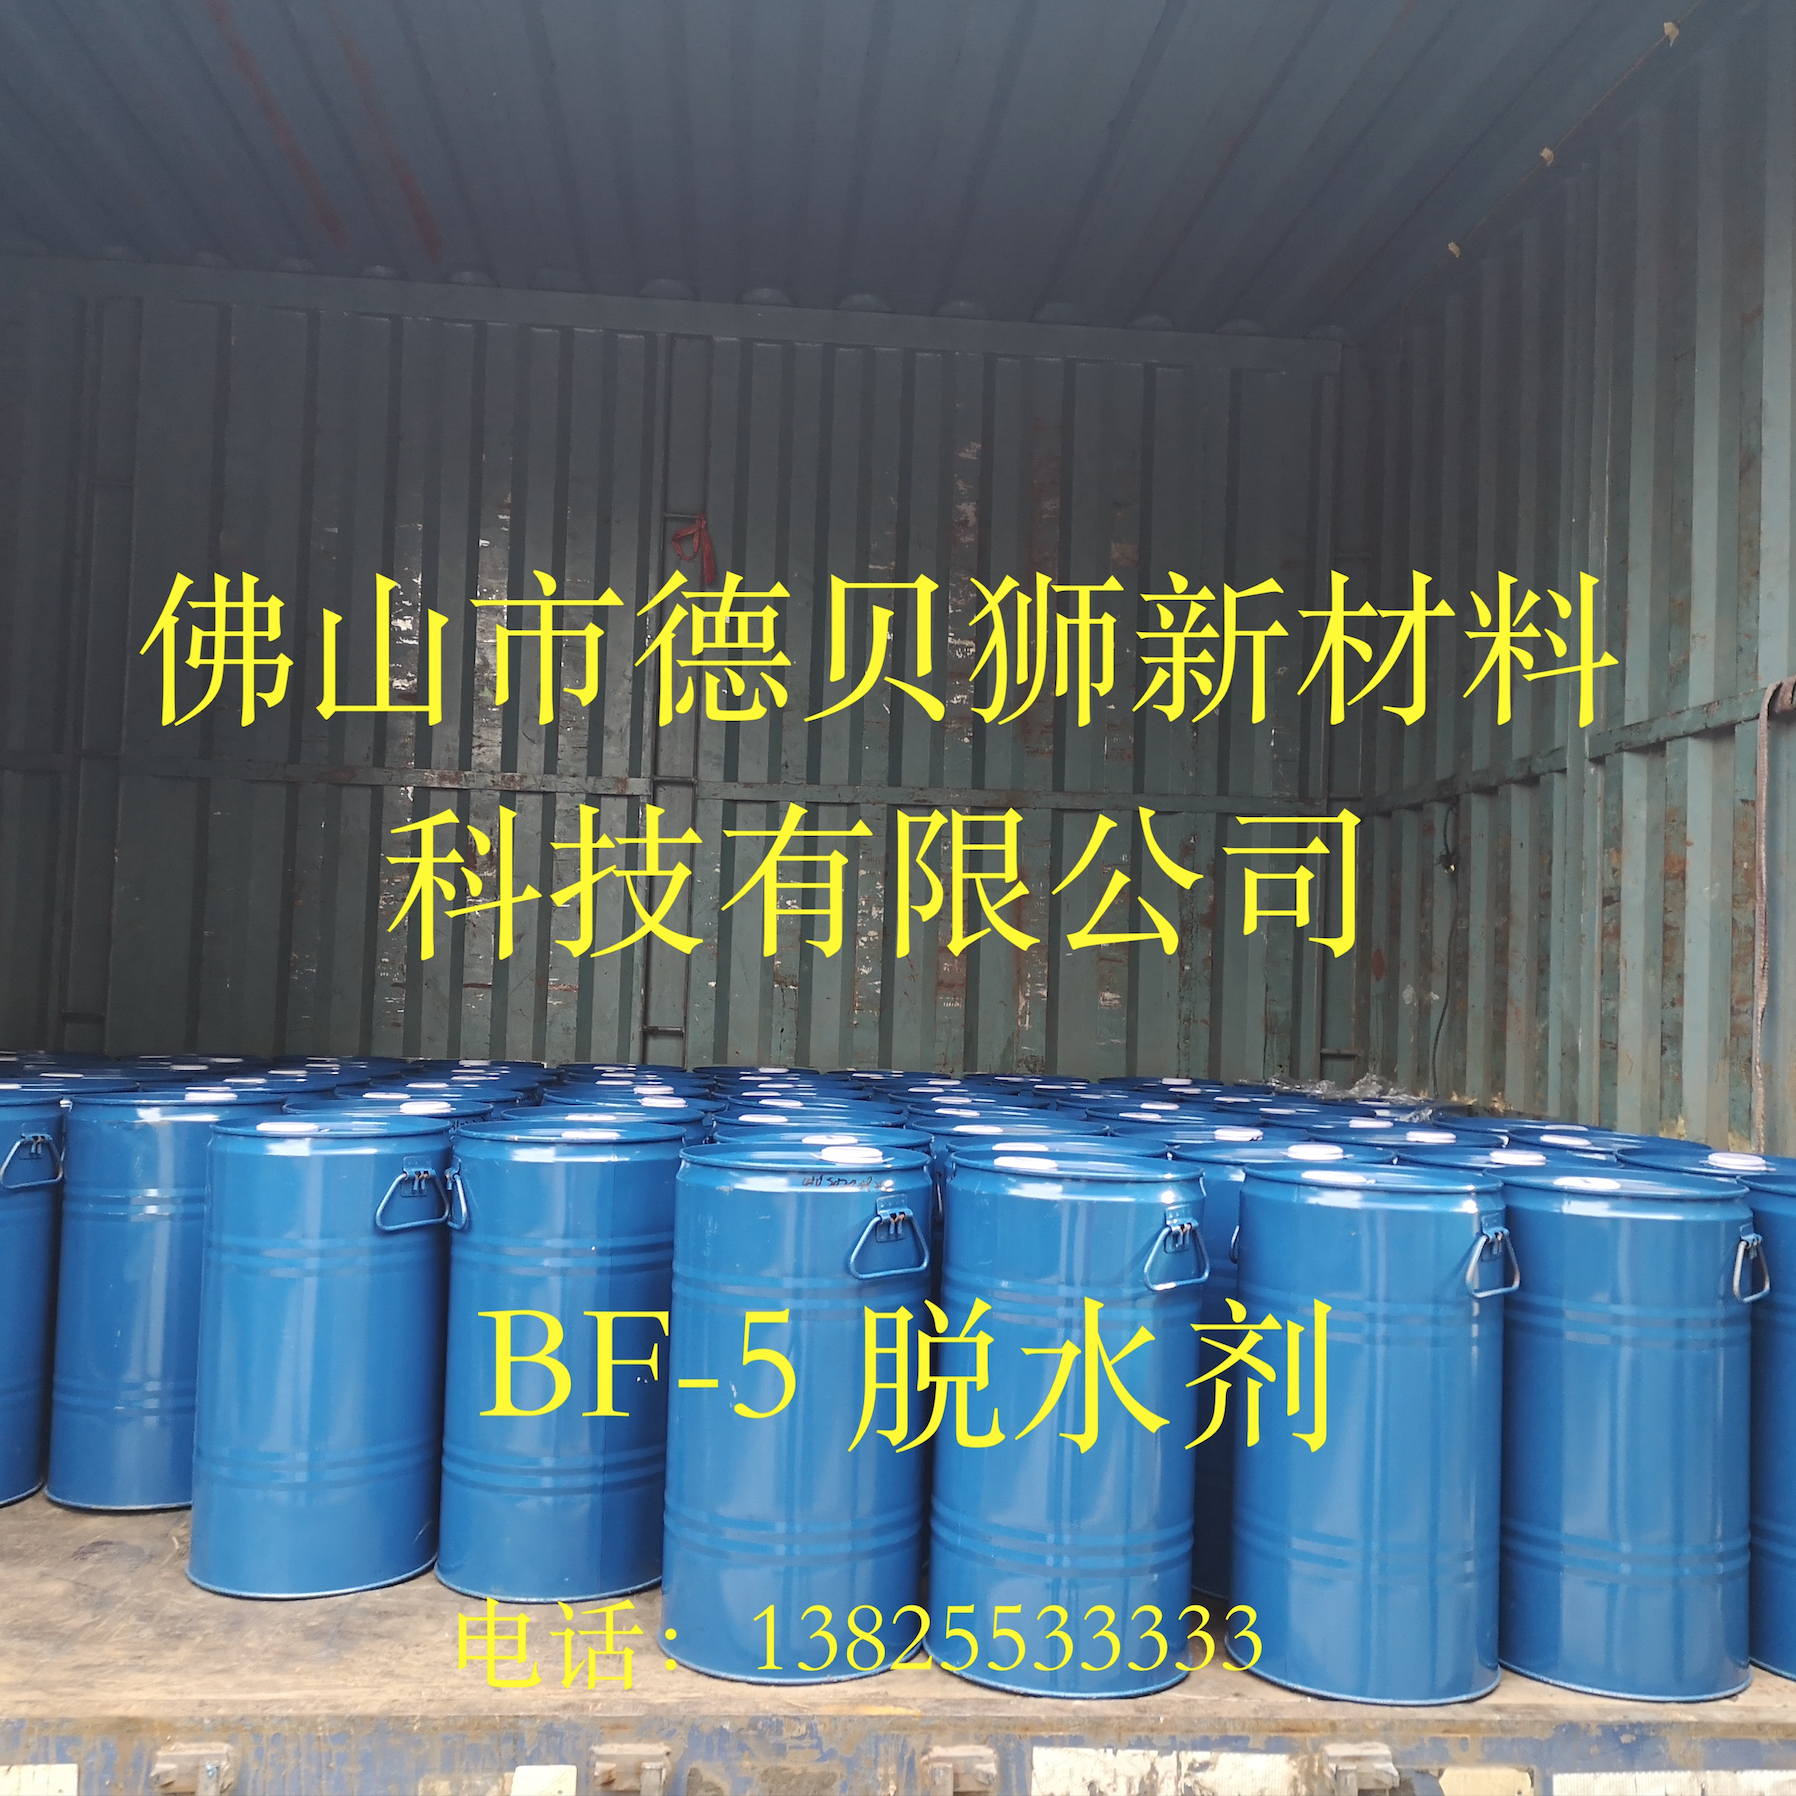 德贝狮BF-5聚氨酯脱水剂厂家固化剂吸水剂TI吸水剂PU脱水剂OF吸水剂